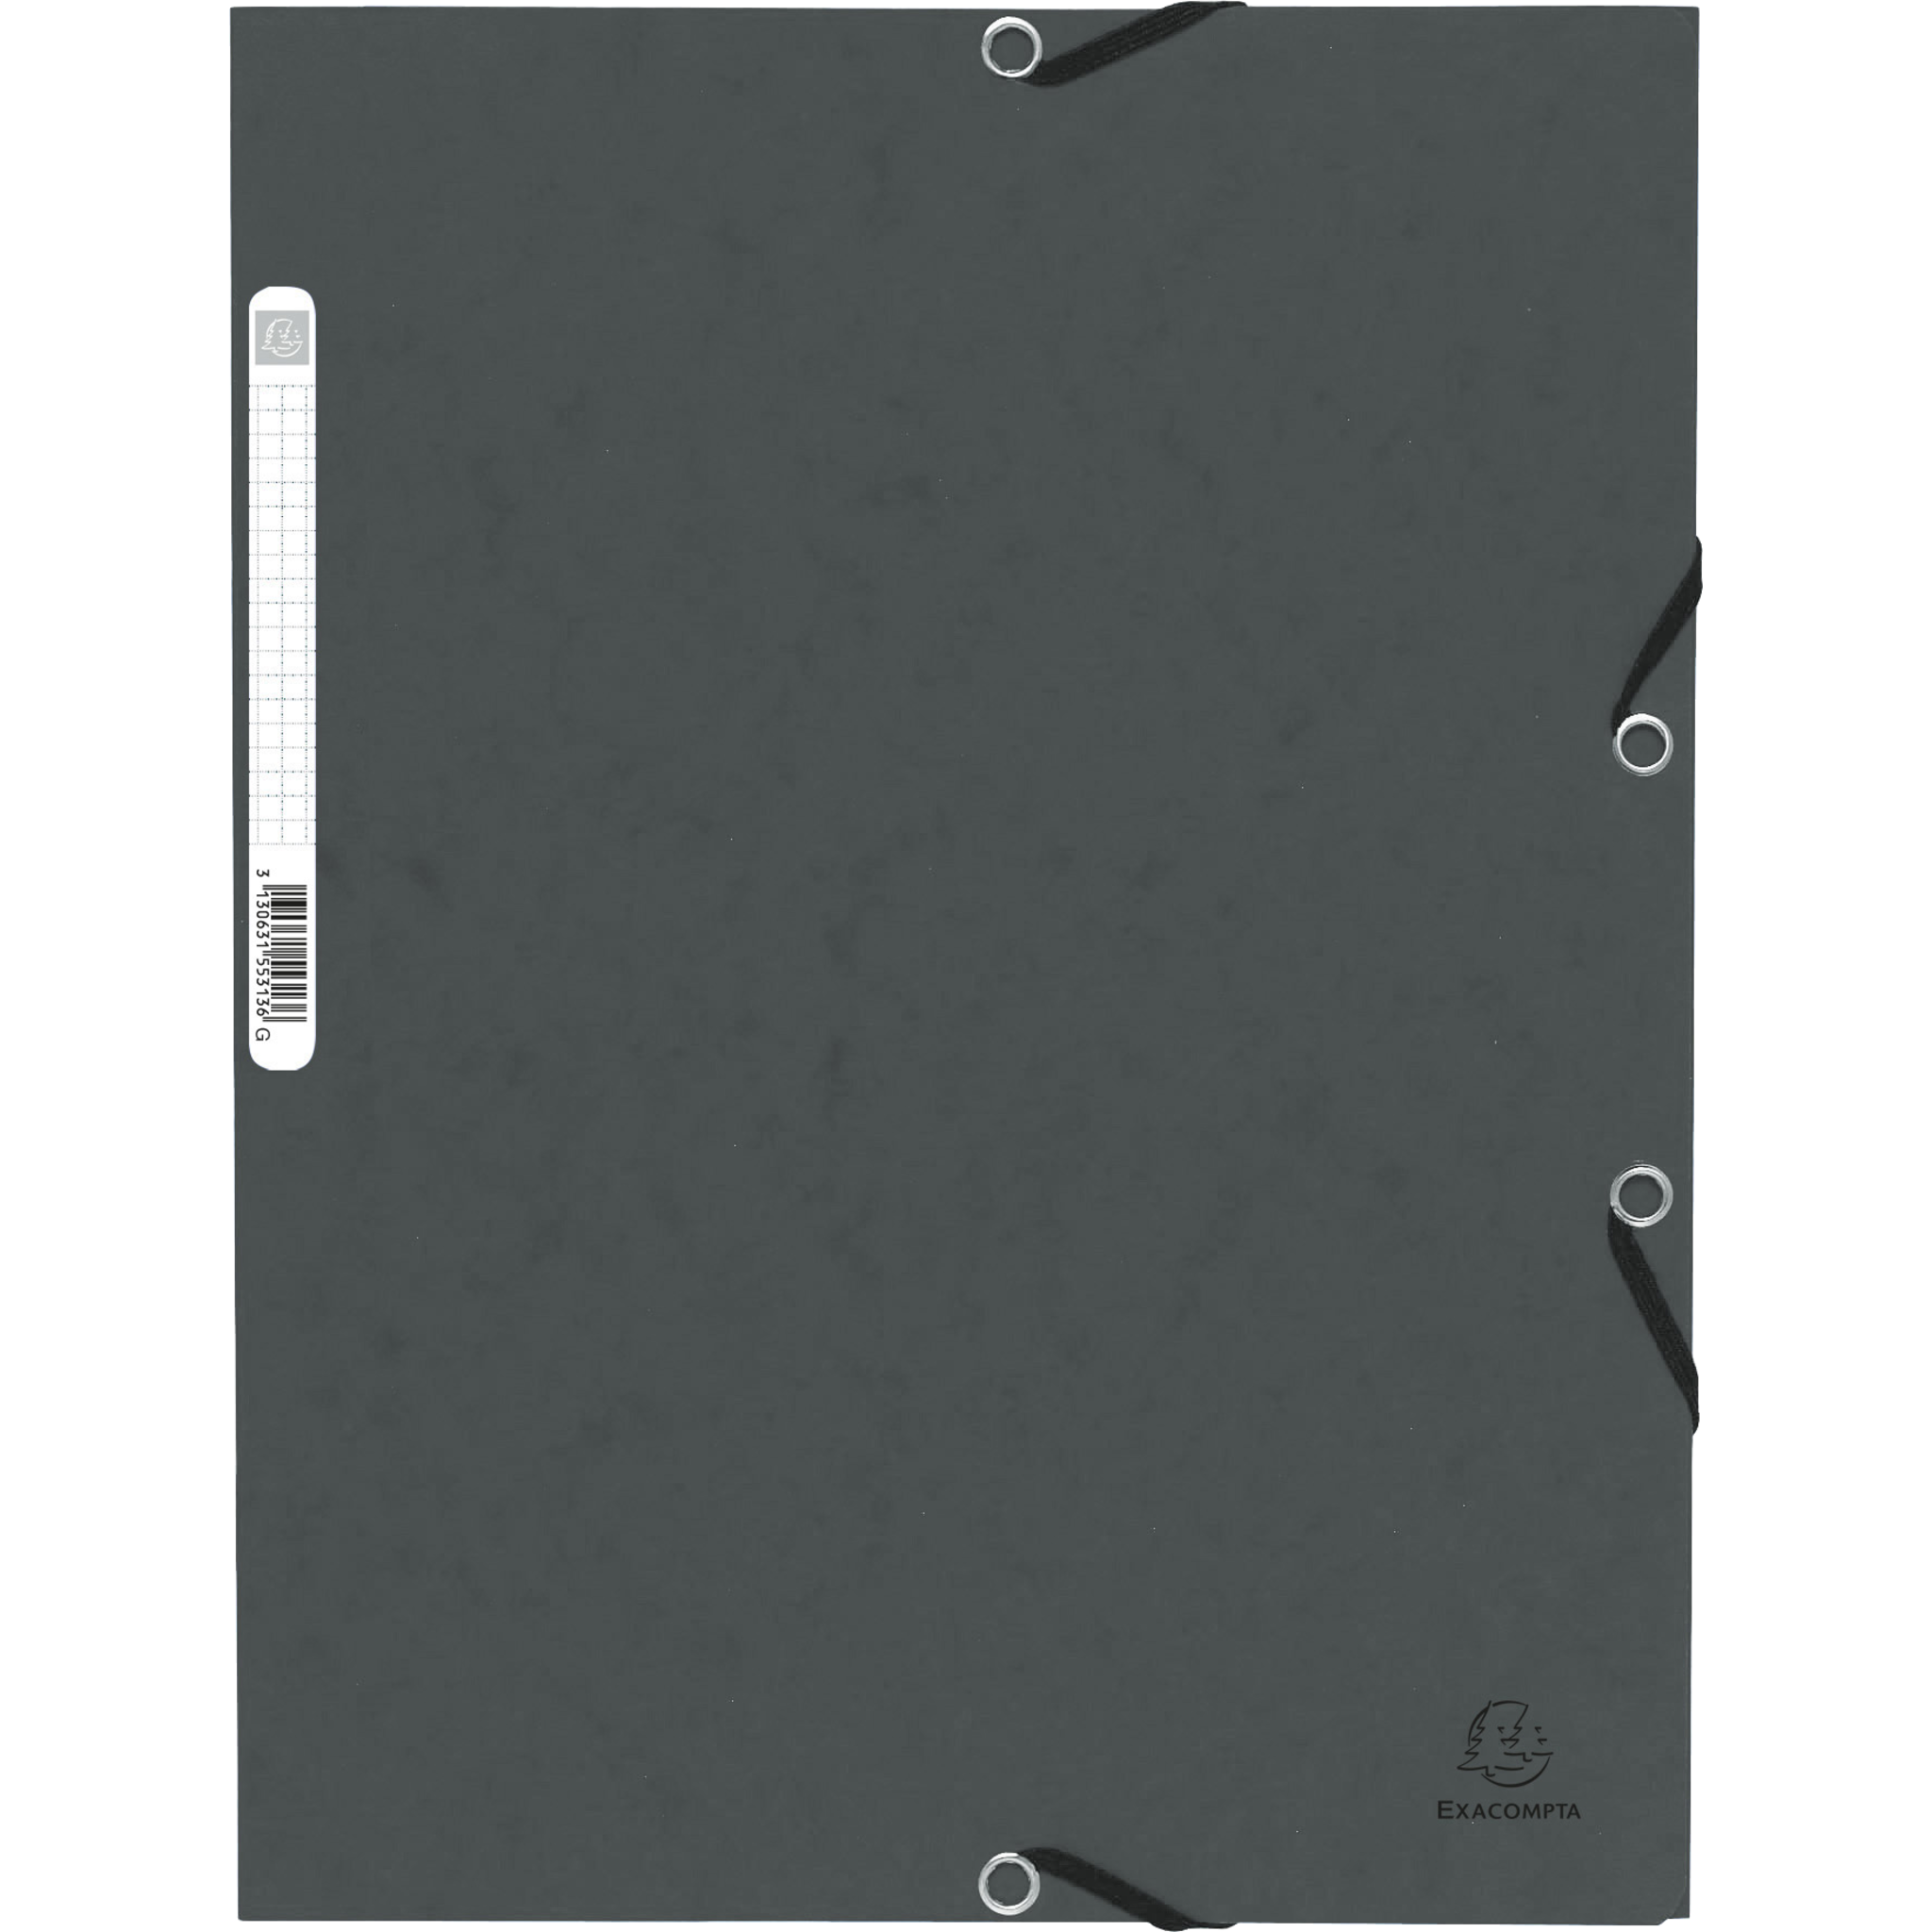 EXACOMPTA Sammelmappe mit Gummizug und 3 Klappen aus Colorspan-Karton 355g/qm, für Format DIN A4 - Grau